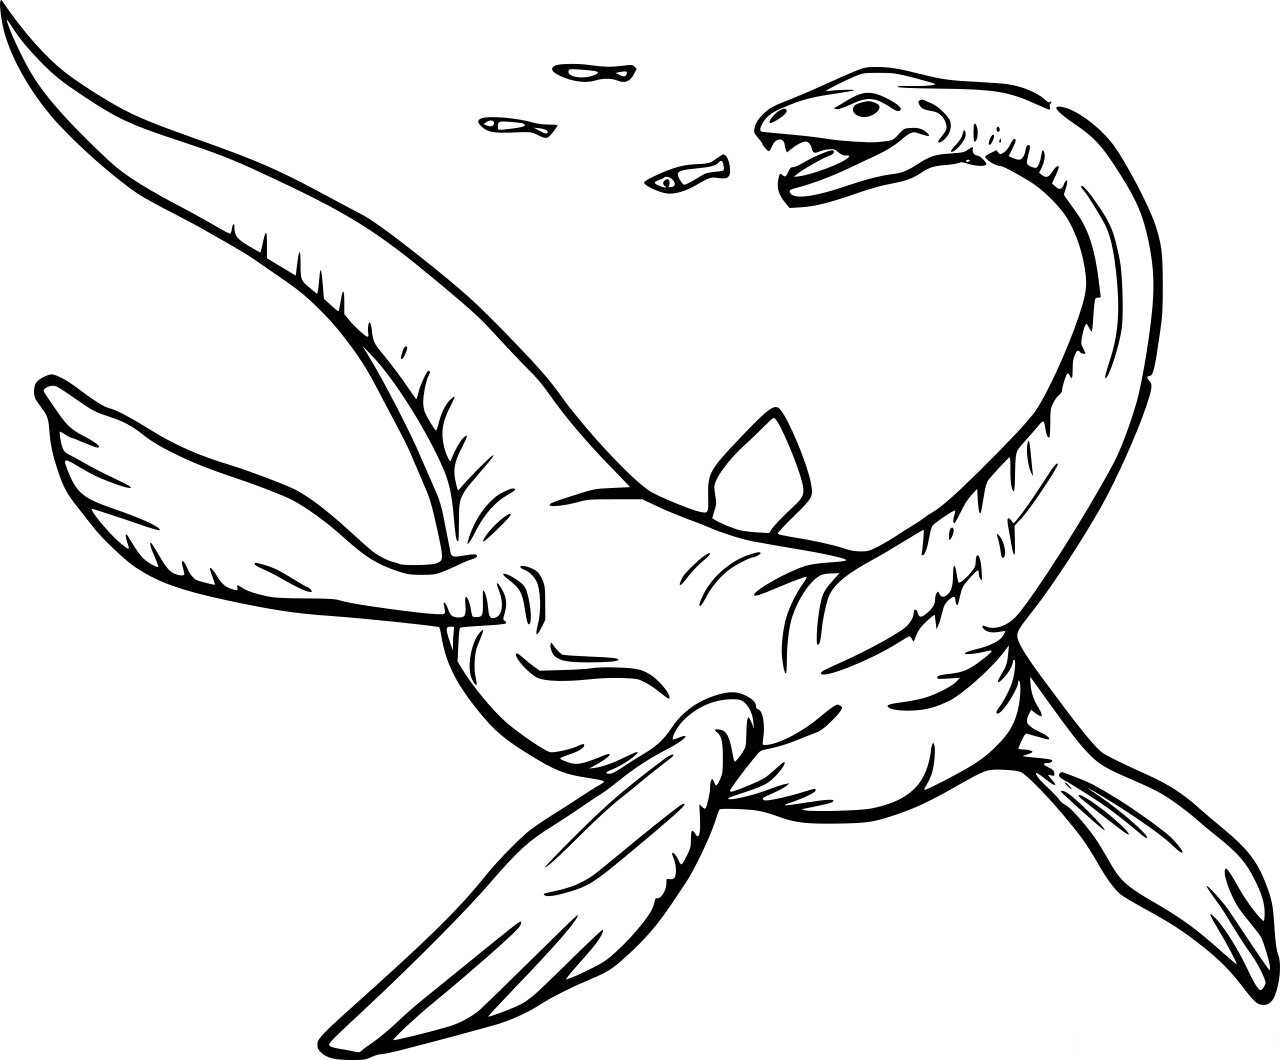 Dinosaurio plesiosaurio comiendo pescado para colorear página